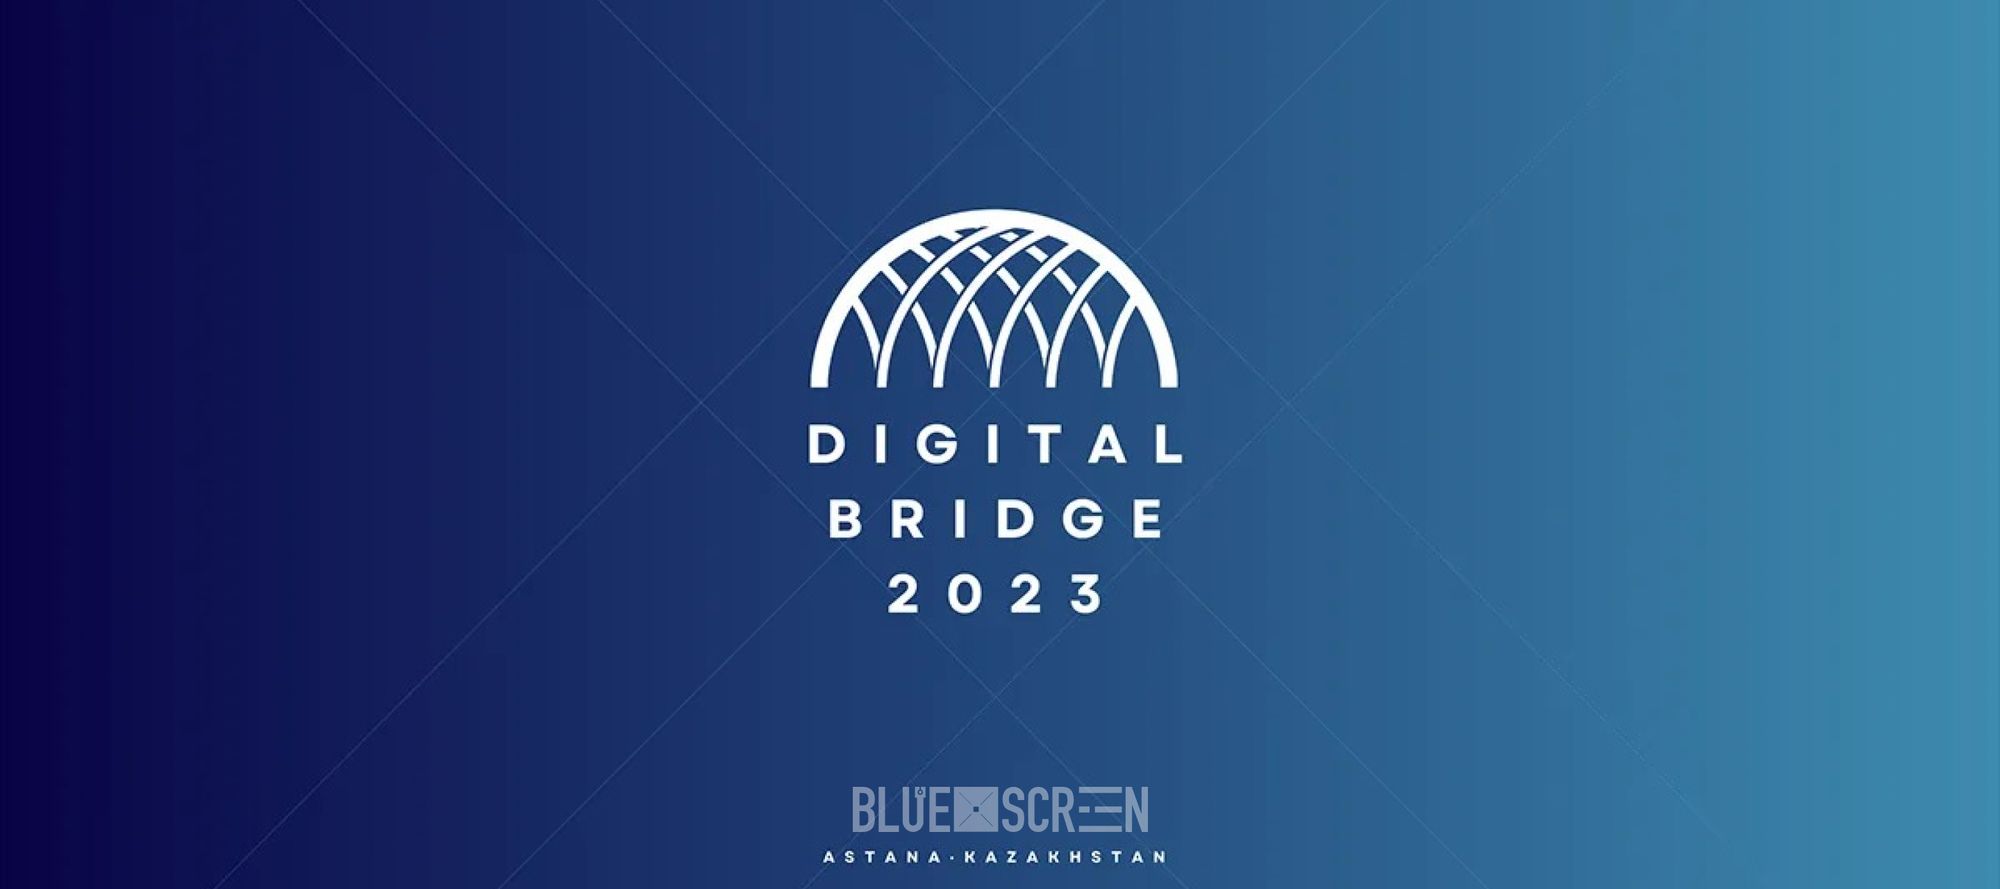 Digital Bridge Awards 2023: определены номинации  премии в области цифровизации